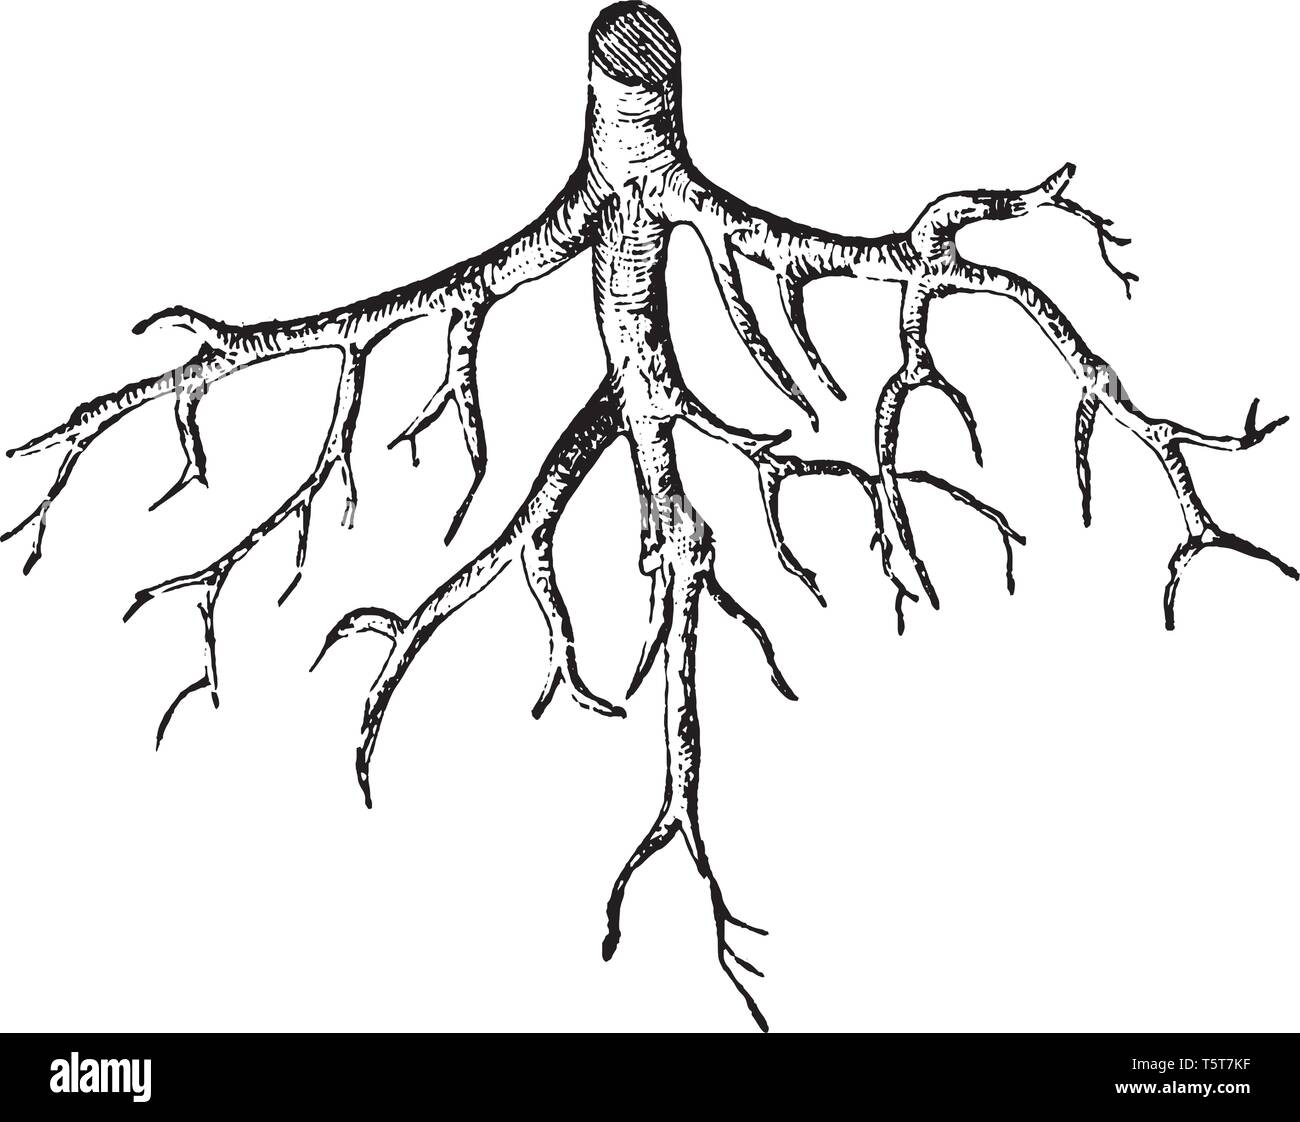 Sistemi di radice sono di importanza vitale per la salute e la longevità di alberi. Tutte le piante hanno bisogno di acqua, ossigeno e sostanze nutrienti, vintage disegno della linea o incisione illustrat Illustrazione Vettoriale